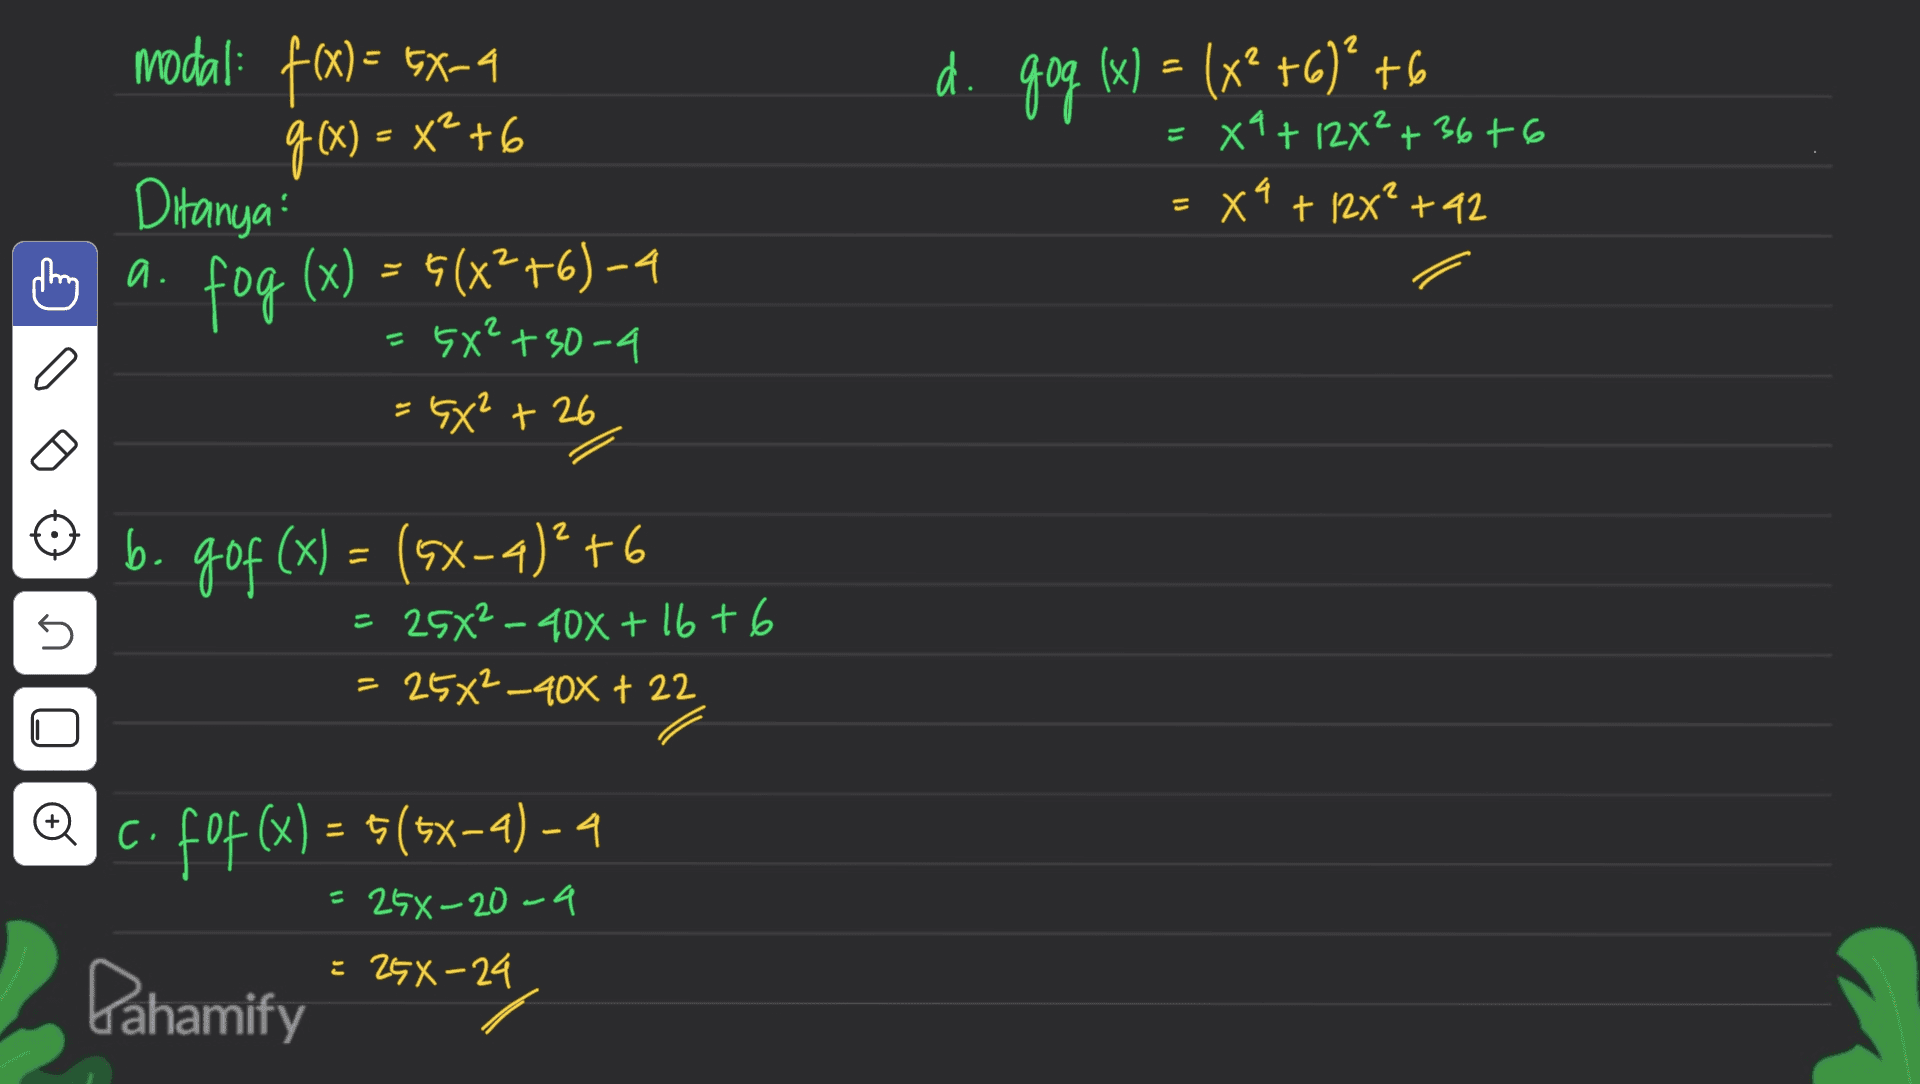 2 modal: f(x) = 5X-4 . g(x) = x²+6 di goo (x) = (x2 +6)* +6 = X4+ 12×²+36+6 = x4 + 12x? +42 2 a. Ditanya fog (x) = 6(x2+6) - 4 5X²+30-4 = 6X² +26 n b. 90f (x) = (5x-4)* +6 b gof 4 25X²-408 +16+6 : 25*2_408 + 22 n @c. fof(x) = $(5x-a) – 4 = 25%-20-9 = 2GX-24 Pahamify 